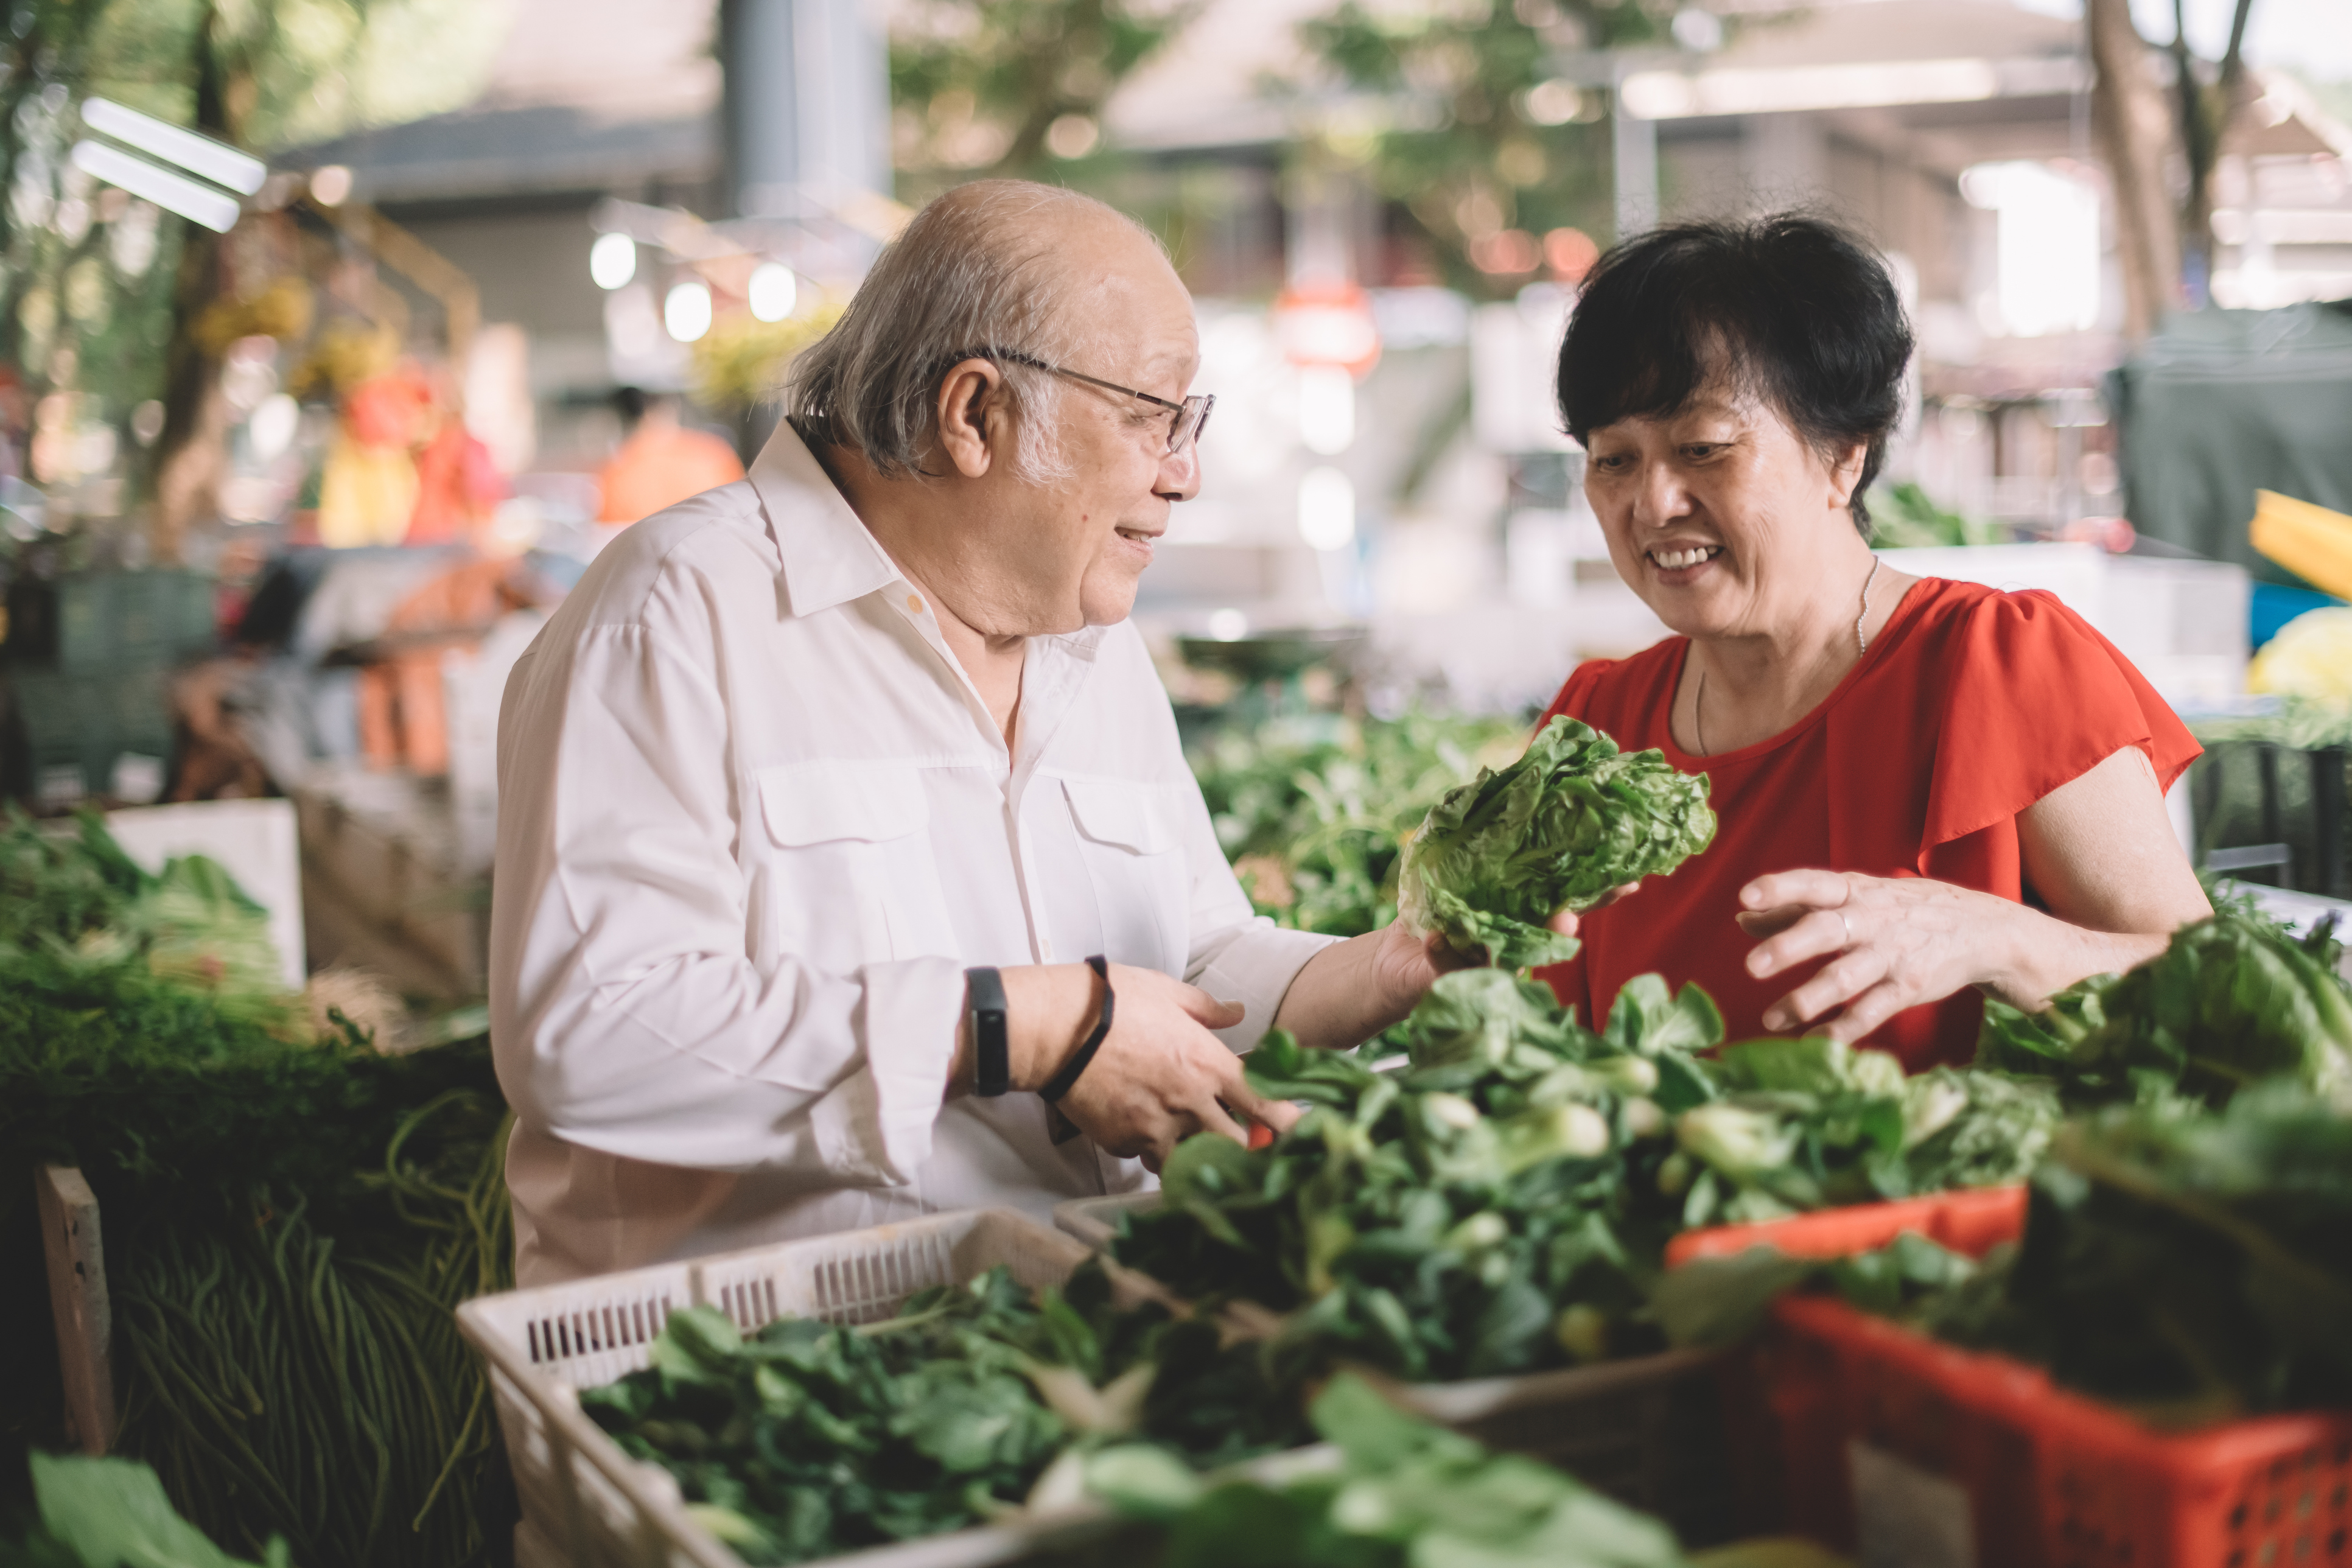 Older adults at market selecting vegetables